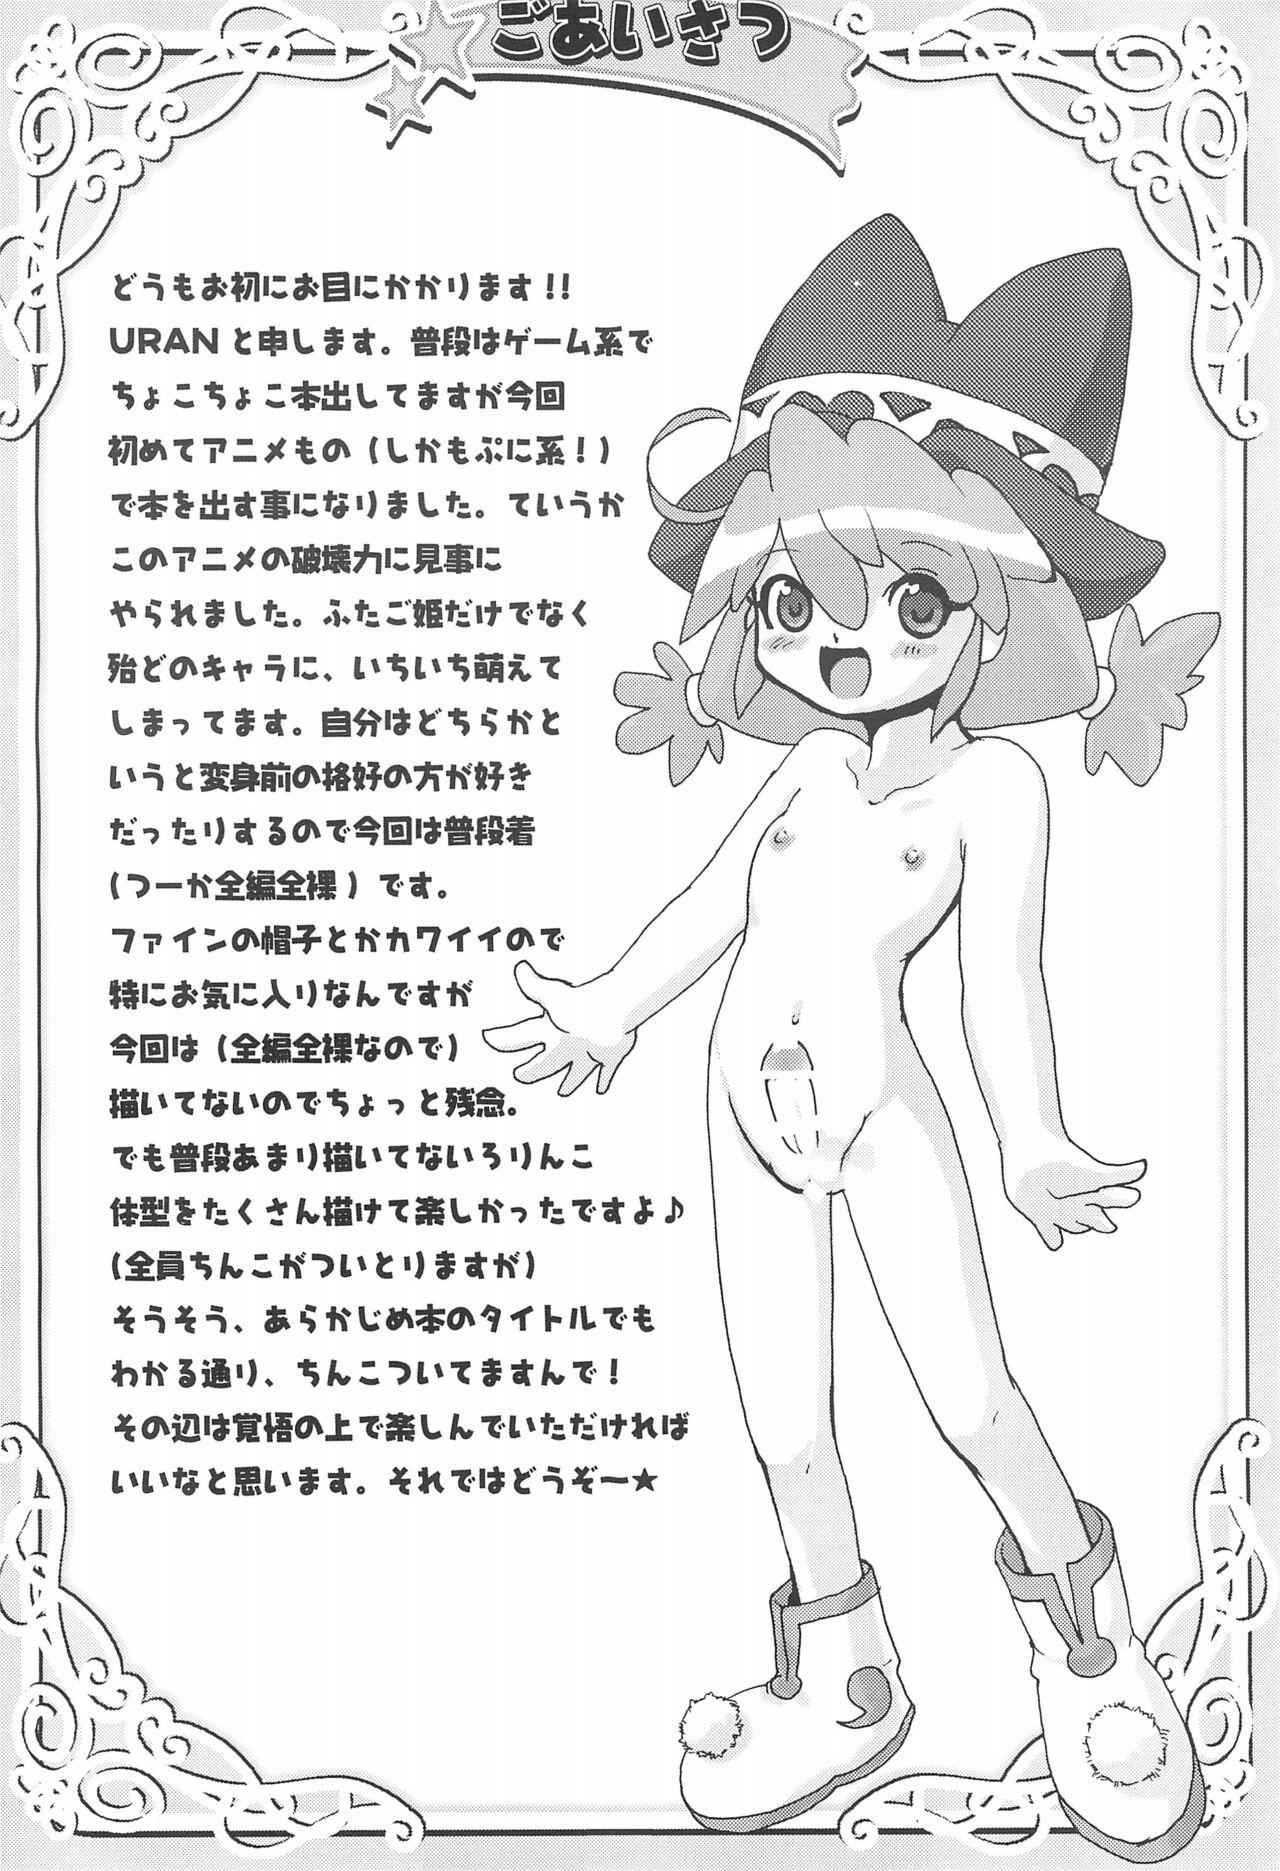 Wet Futanari Twinkle - Fushigiboshi no futagohime | twin princesses of the wonder planet Camgirl - Page 4